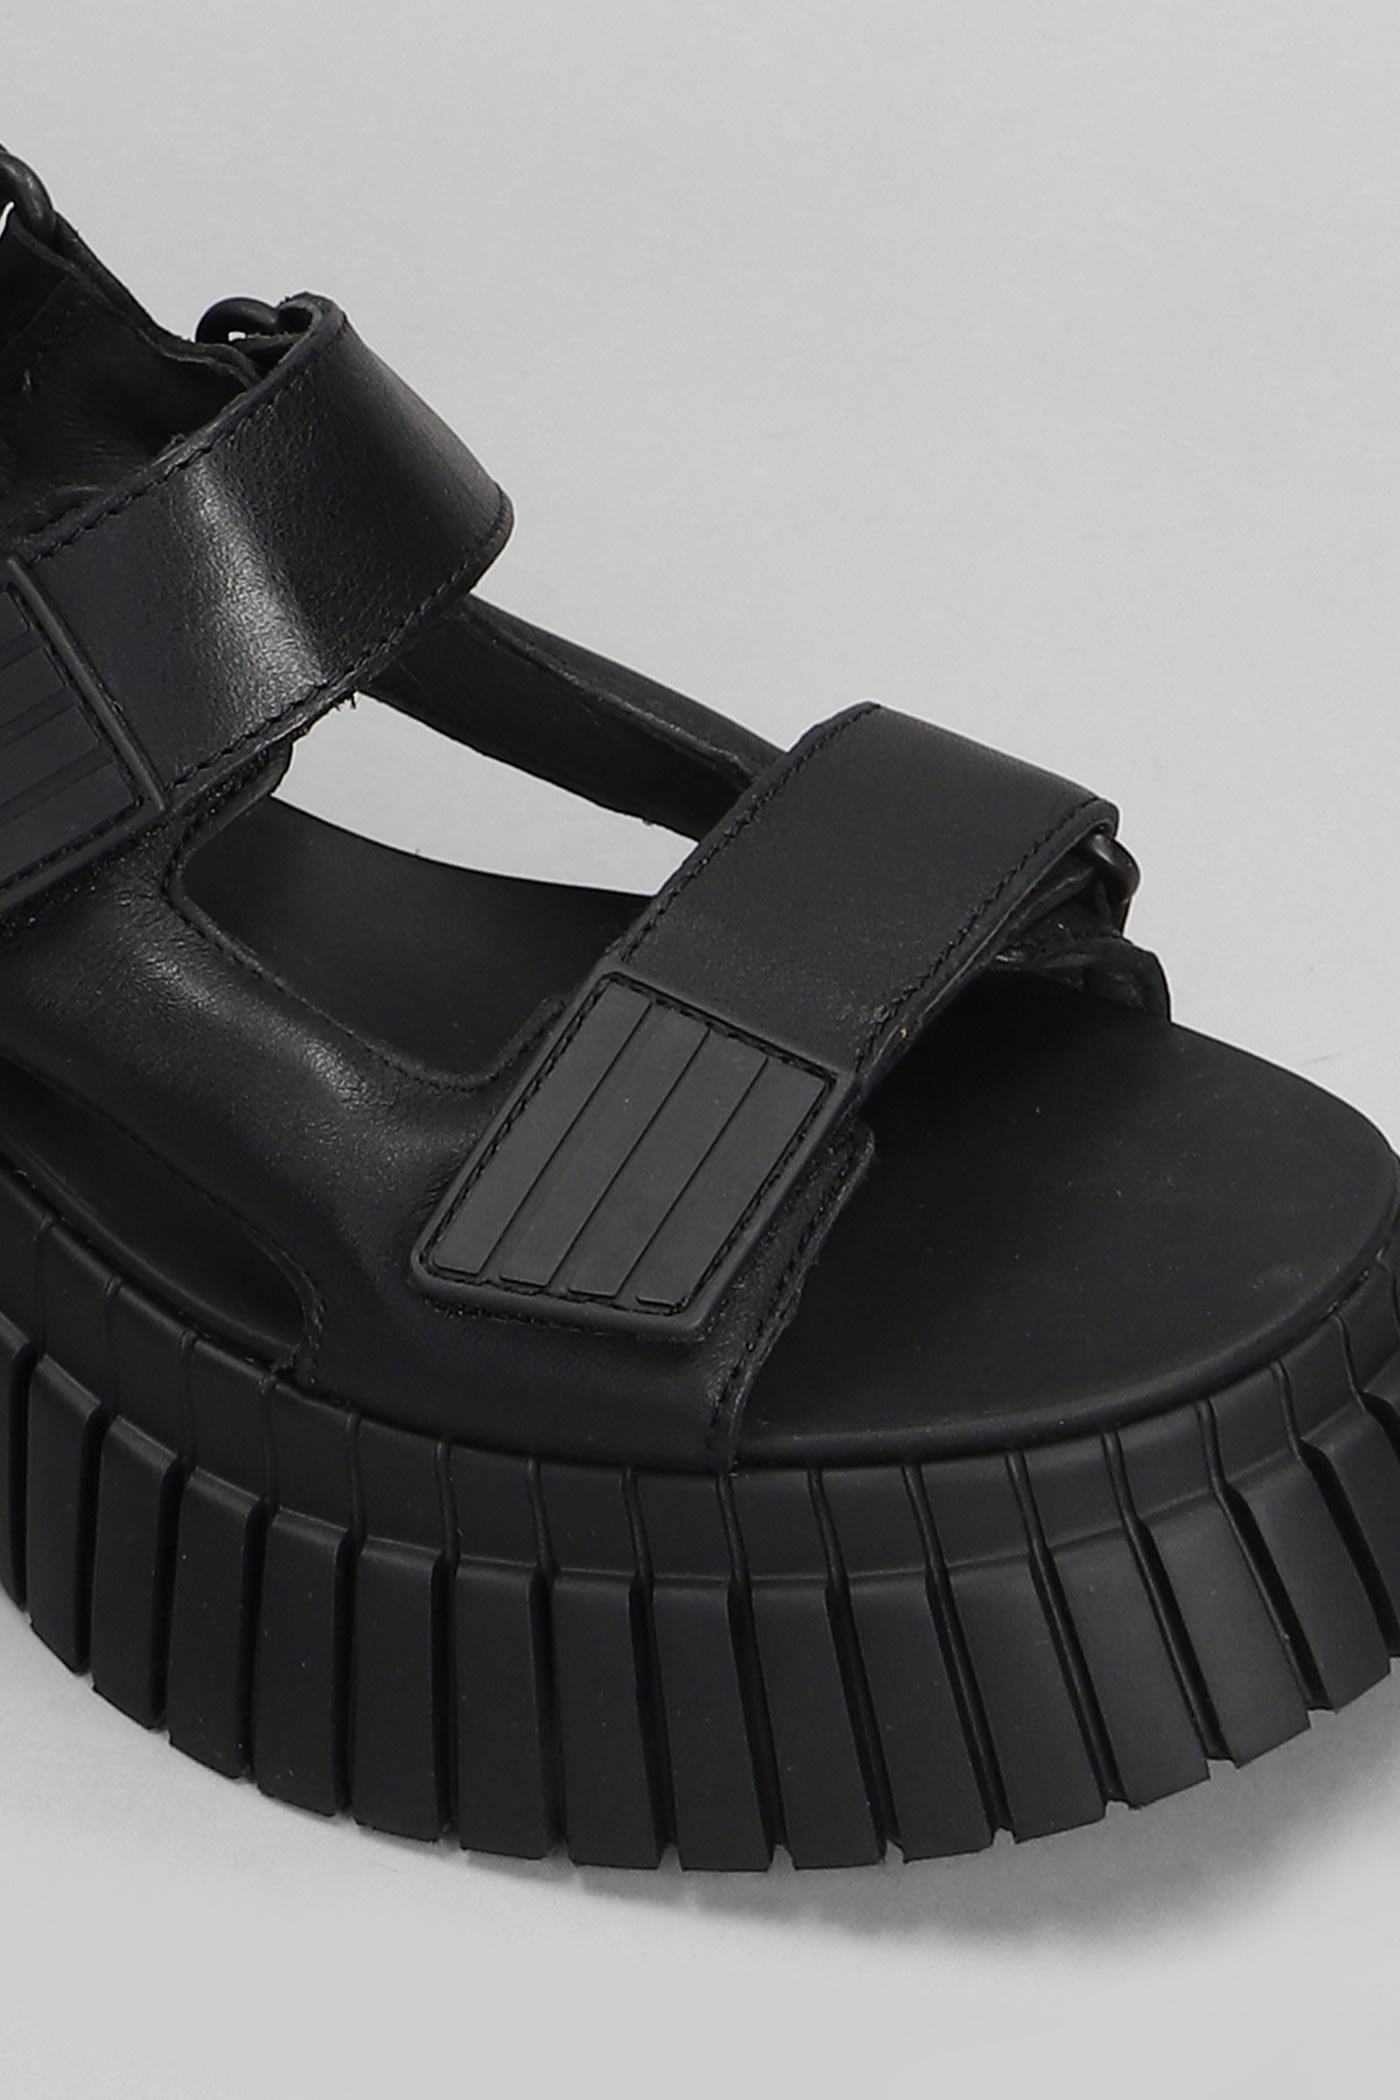 Shop Camper Bcn Sandals In Black Leather